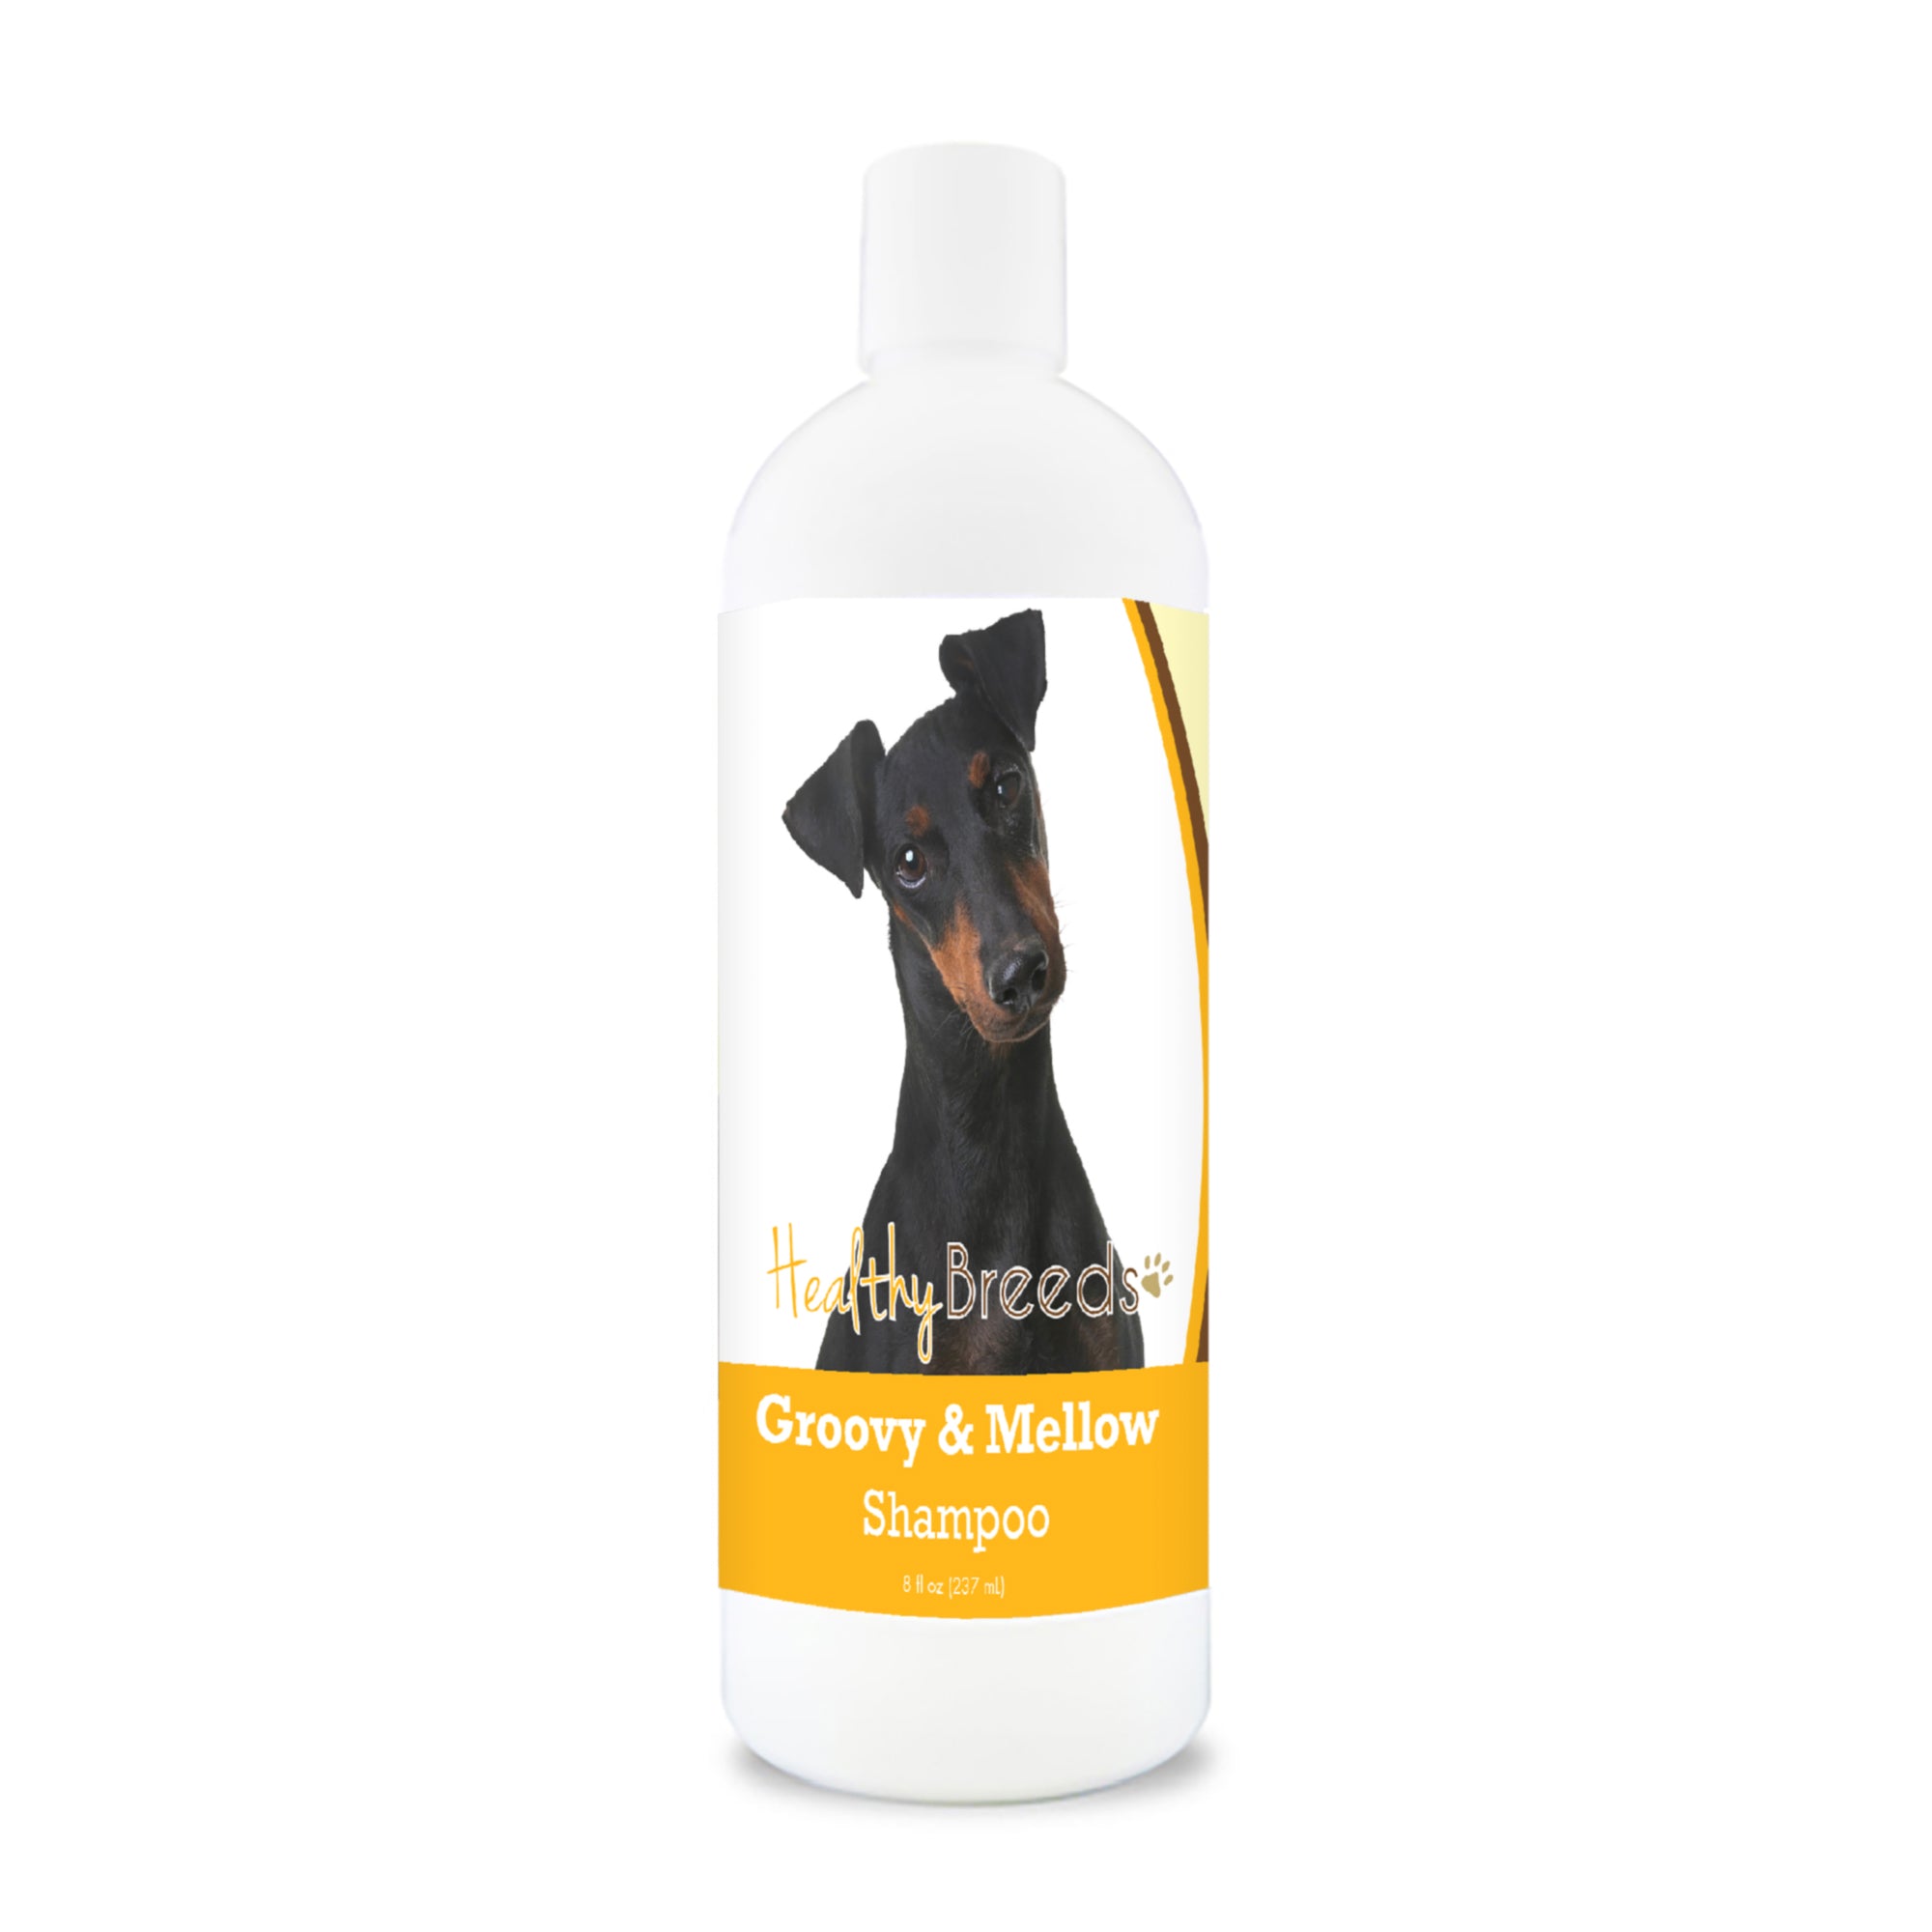 Manchester Terrier Groovy & Mellow Shampoo 8 oz